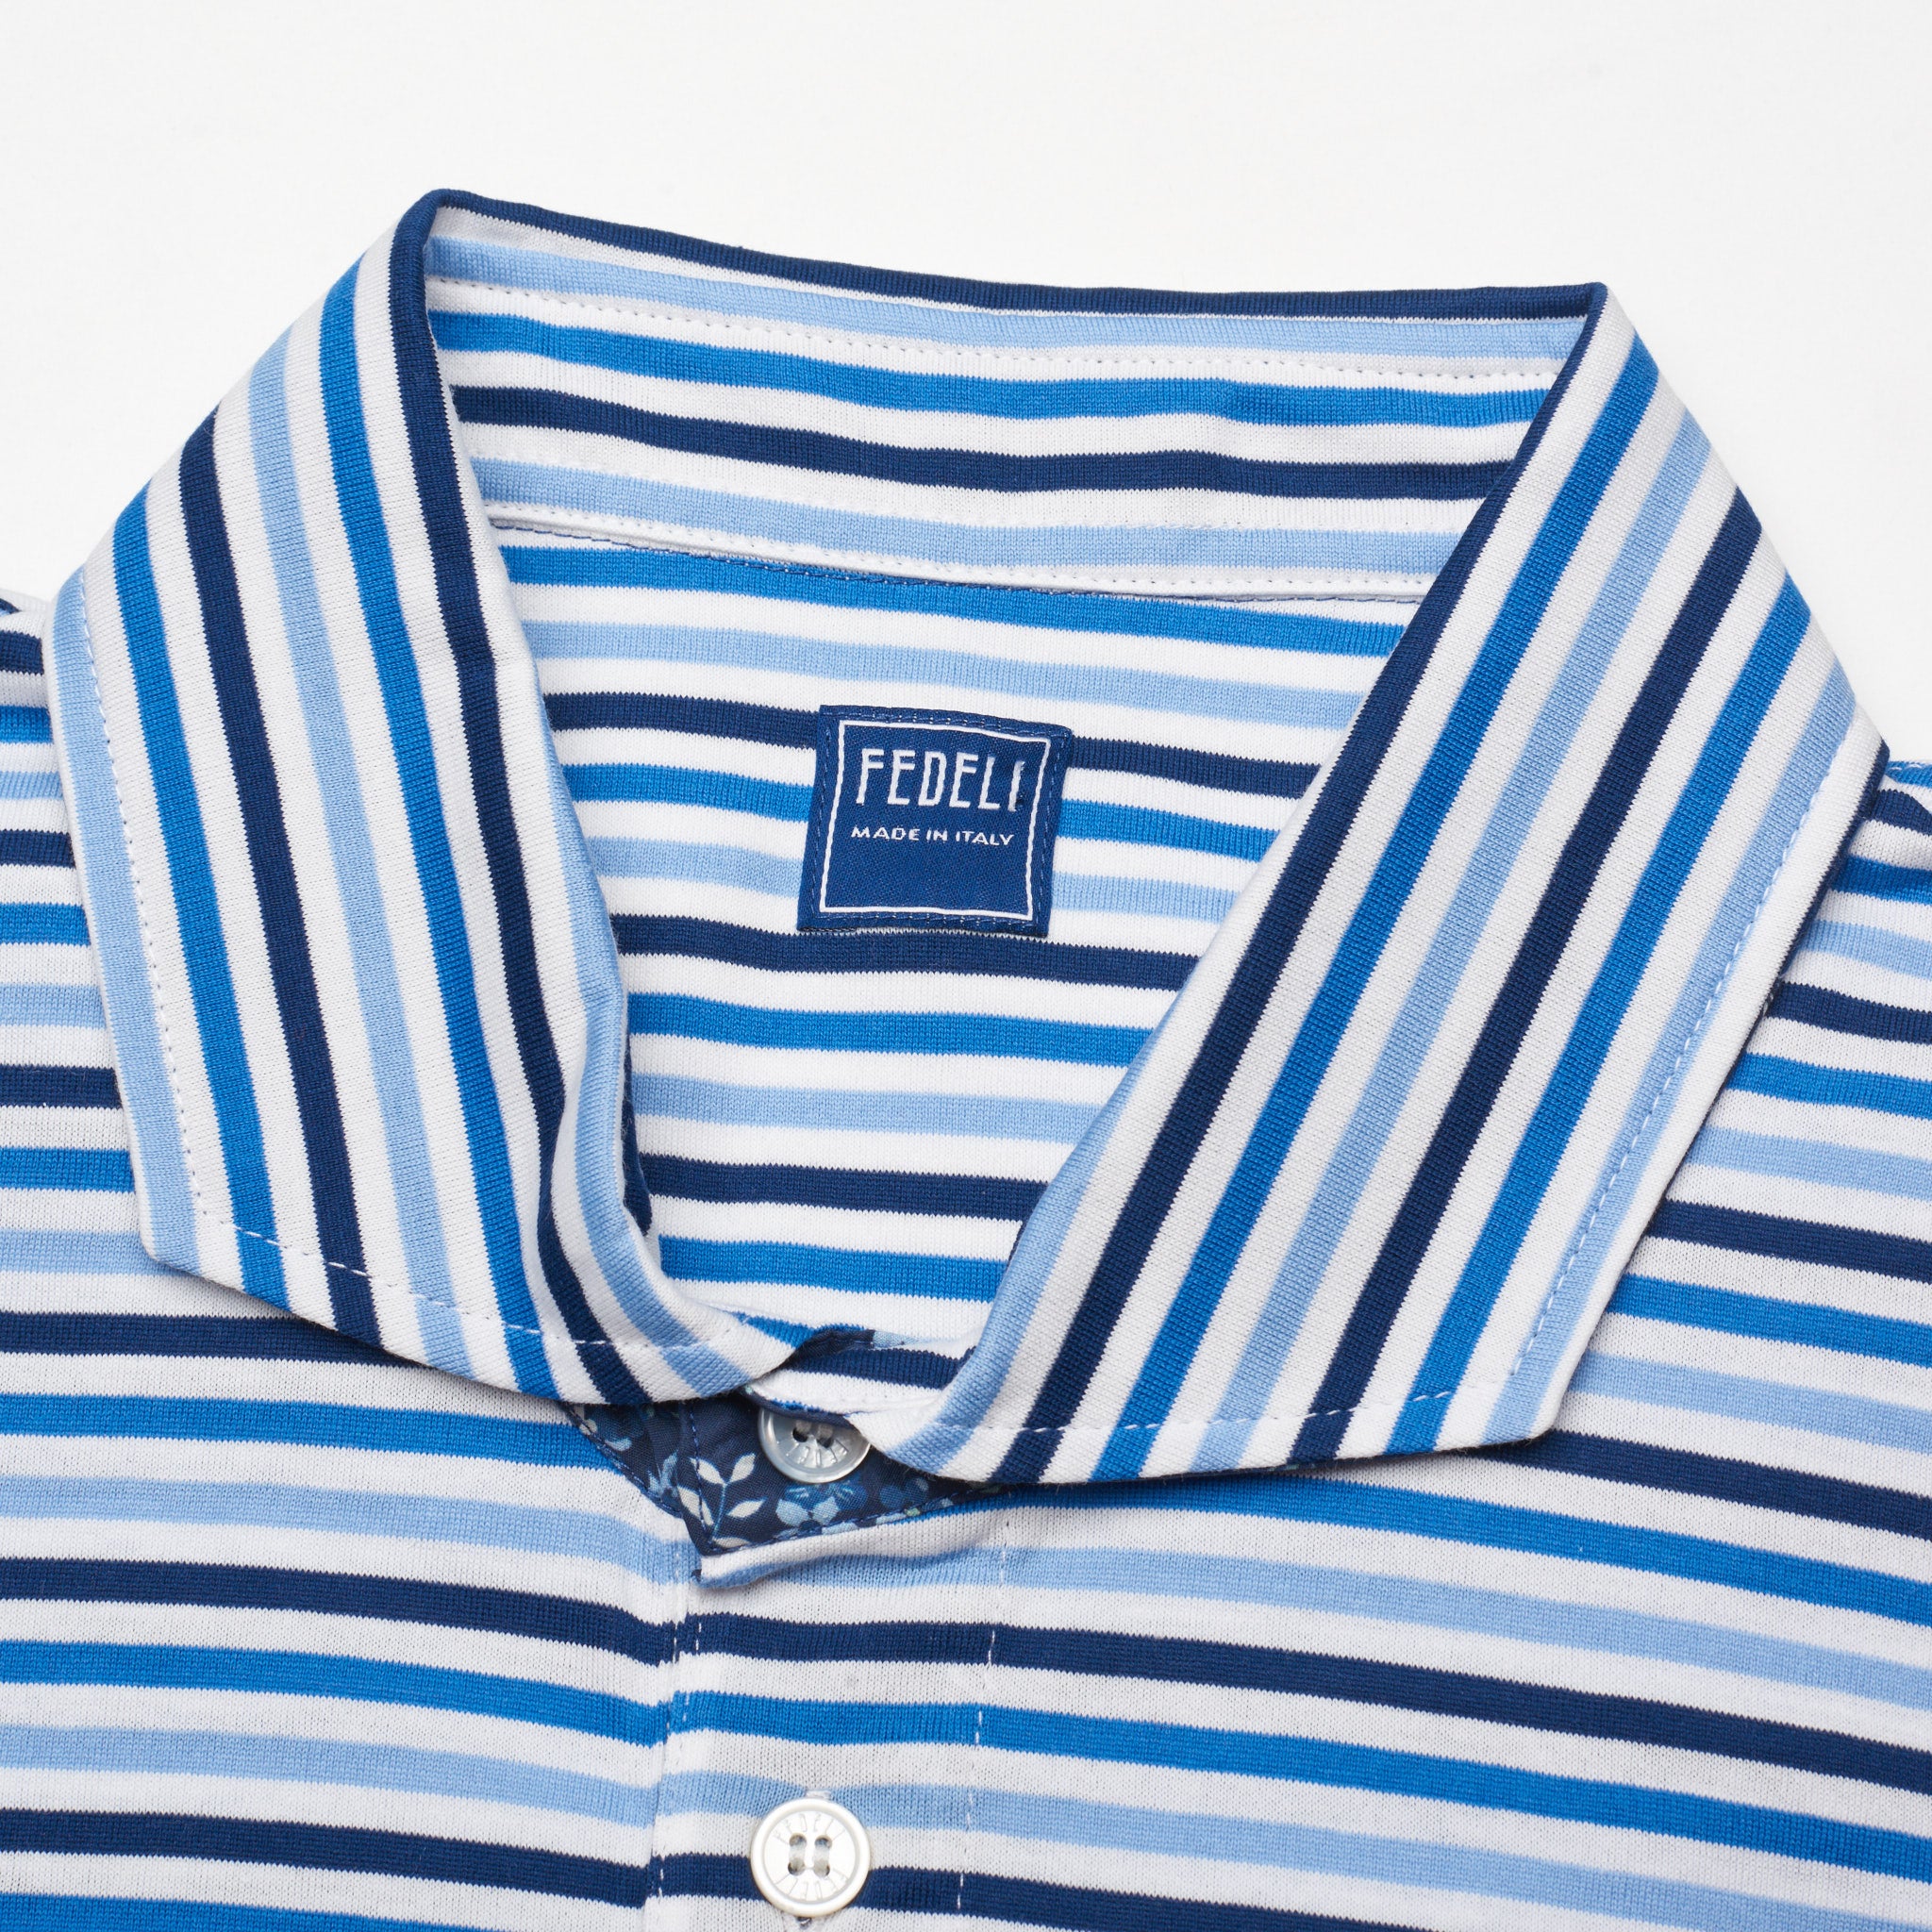 FEDELI "Manuel" Blue-White Striped Cotton Jersey Polo Shirt EU 58 NEW US 3XL FEDELI